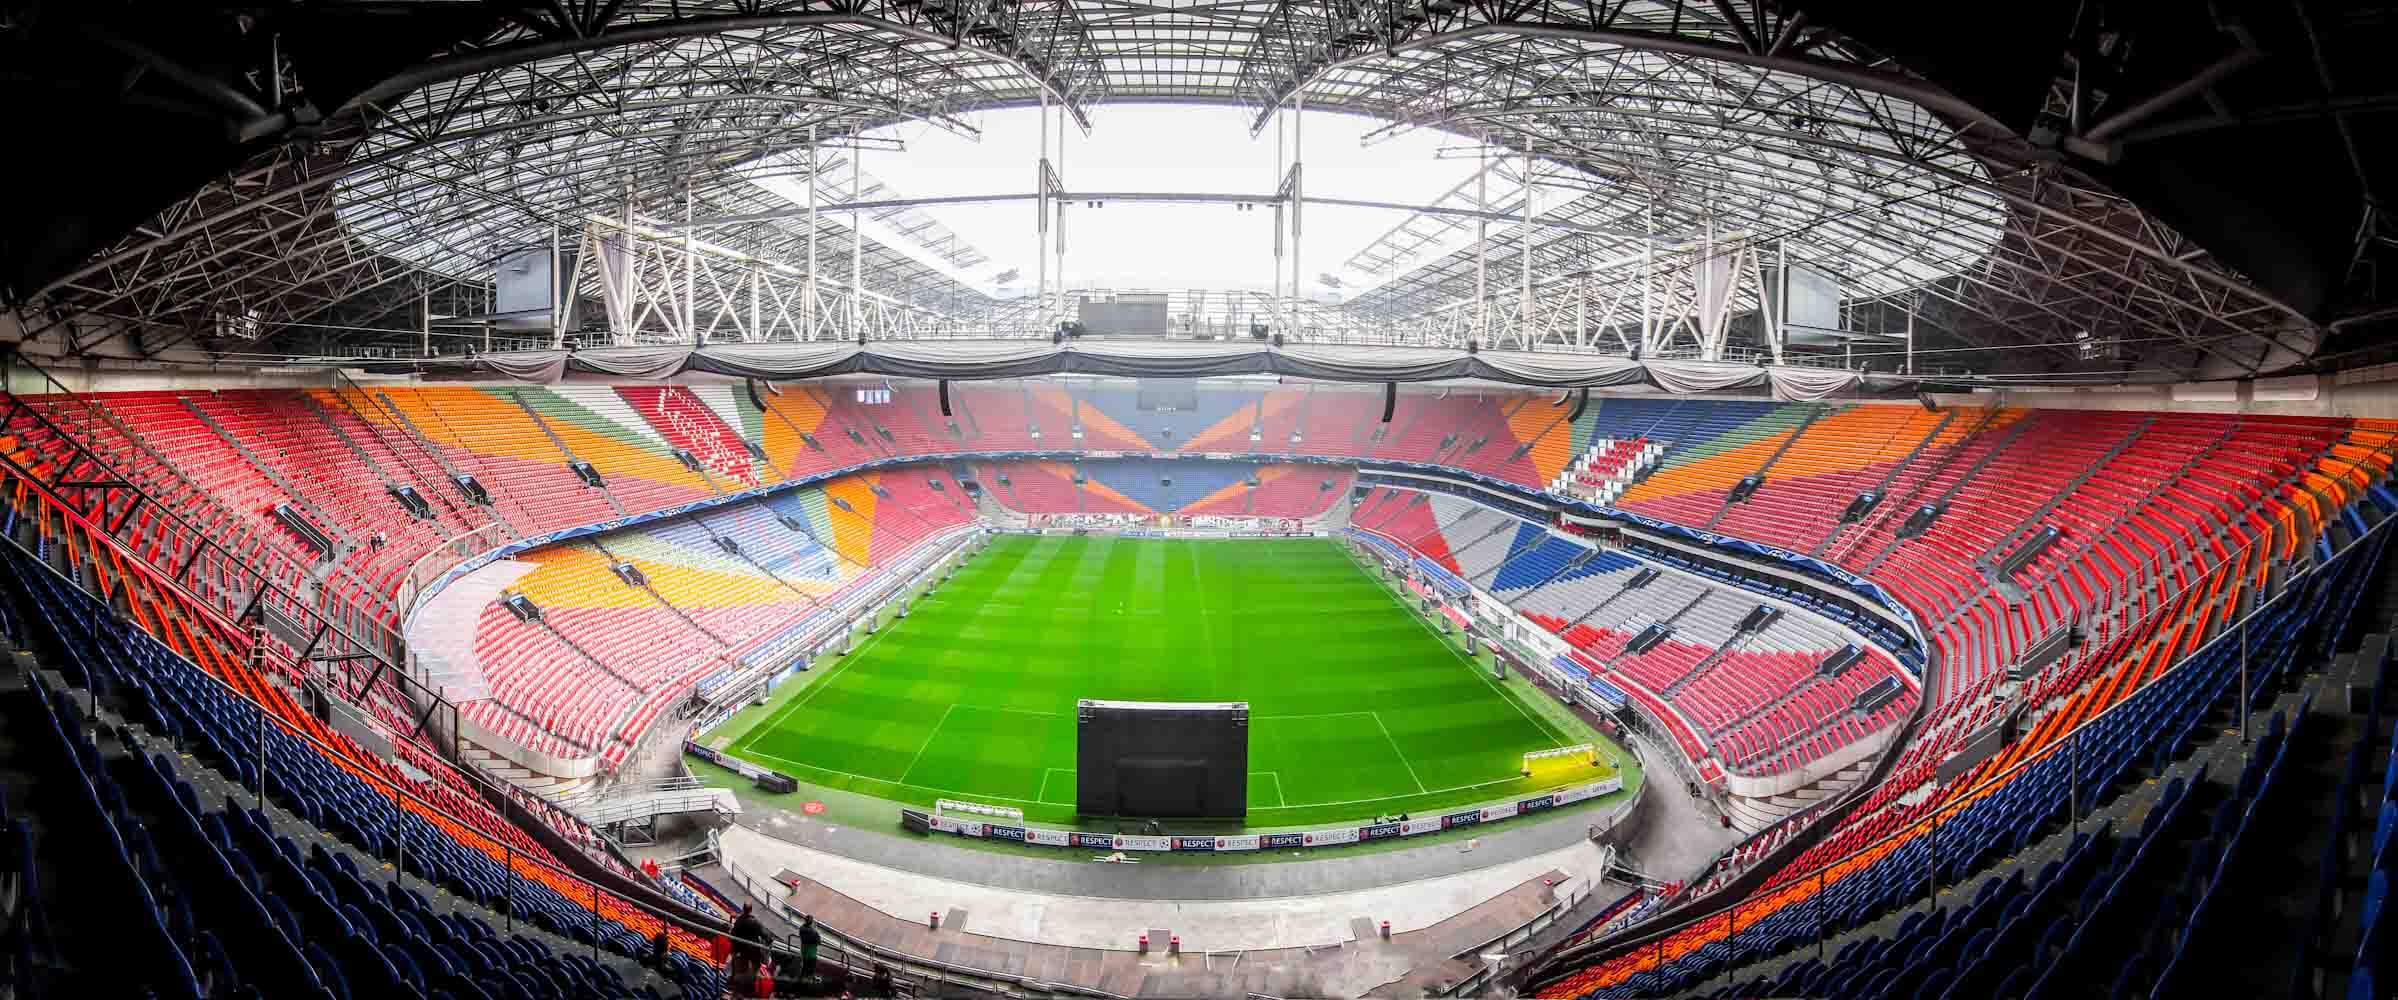 AFC Ajax Vs FC Utrecht 12 05 2019. Football Ticket Net